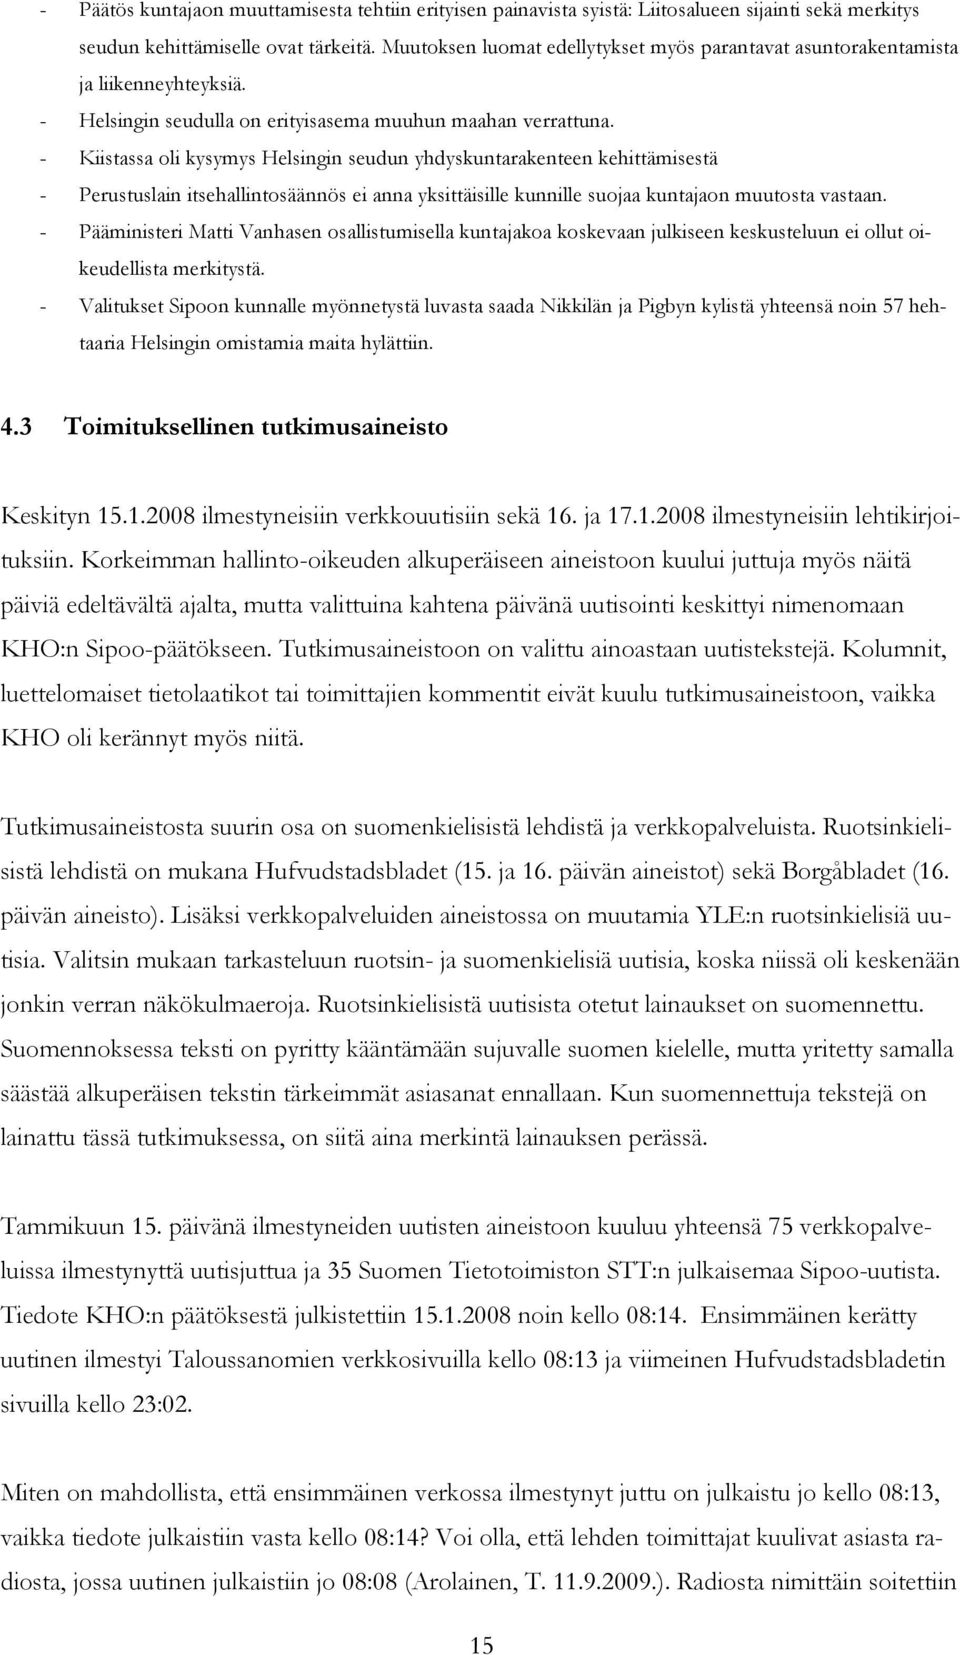 - Kiistassa oli kysymys Helsingin seudun yhdyskuntarakenteen kehittämisestä - Perustuslain itsehallintosäännös ei anna yksittäisille kunnille suojaa kuntajaon muutosta vastaan.